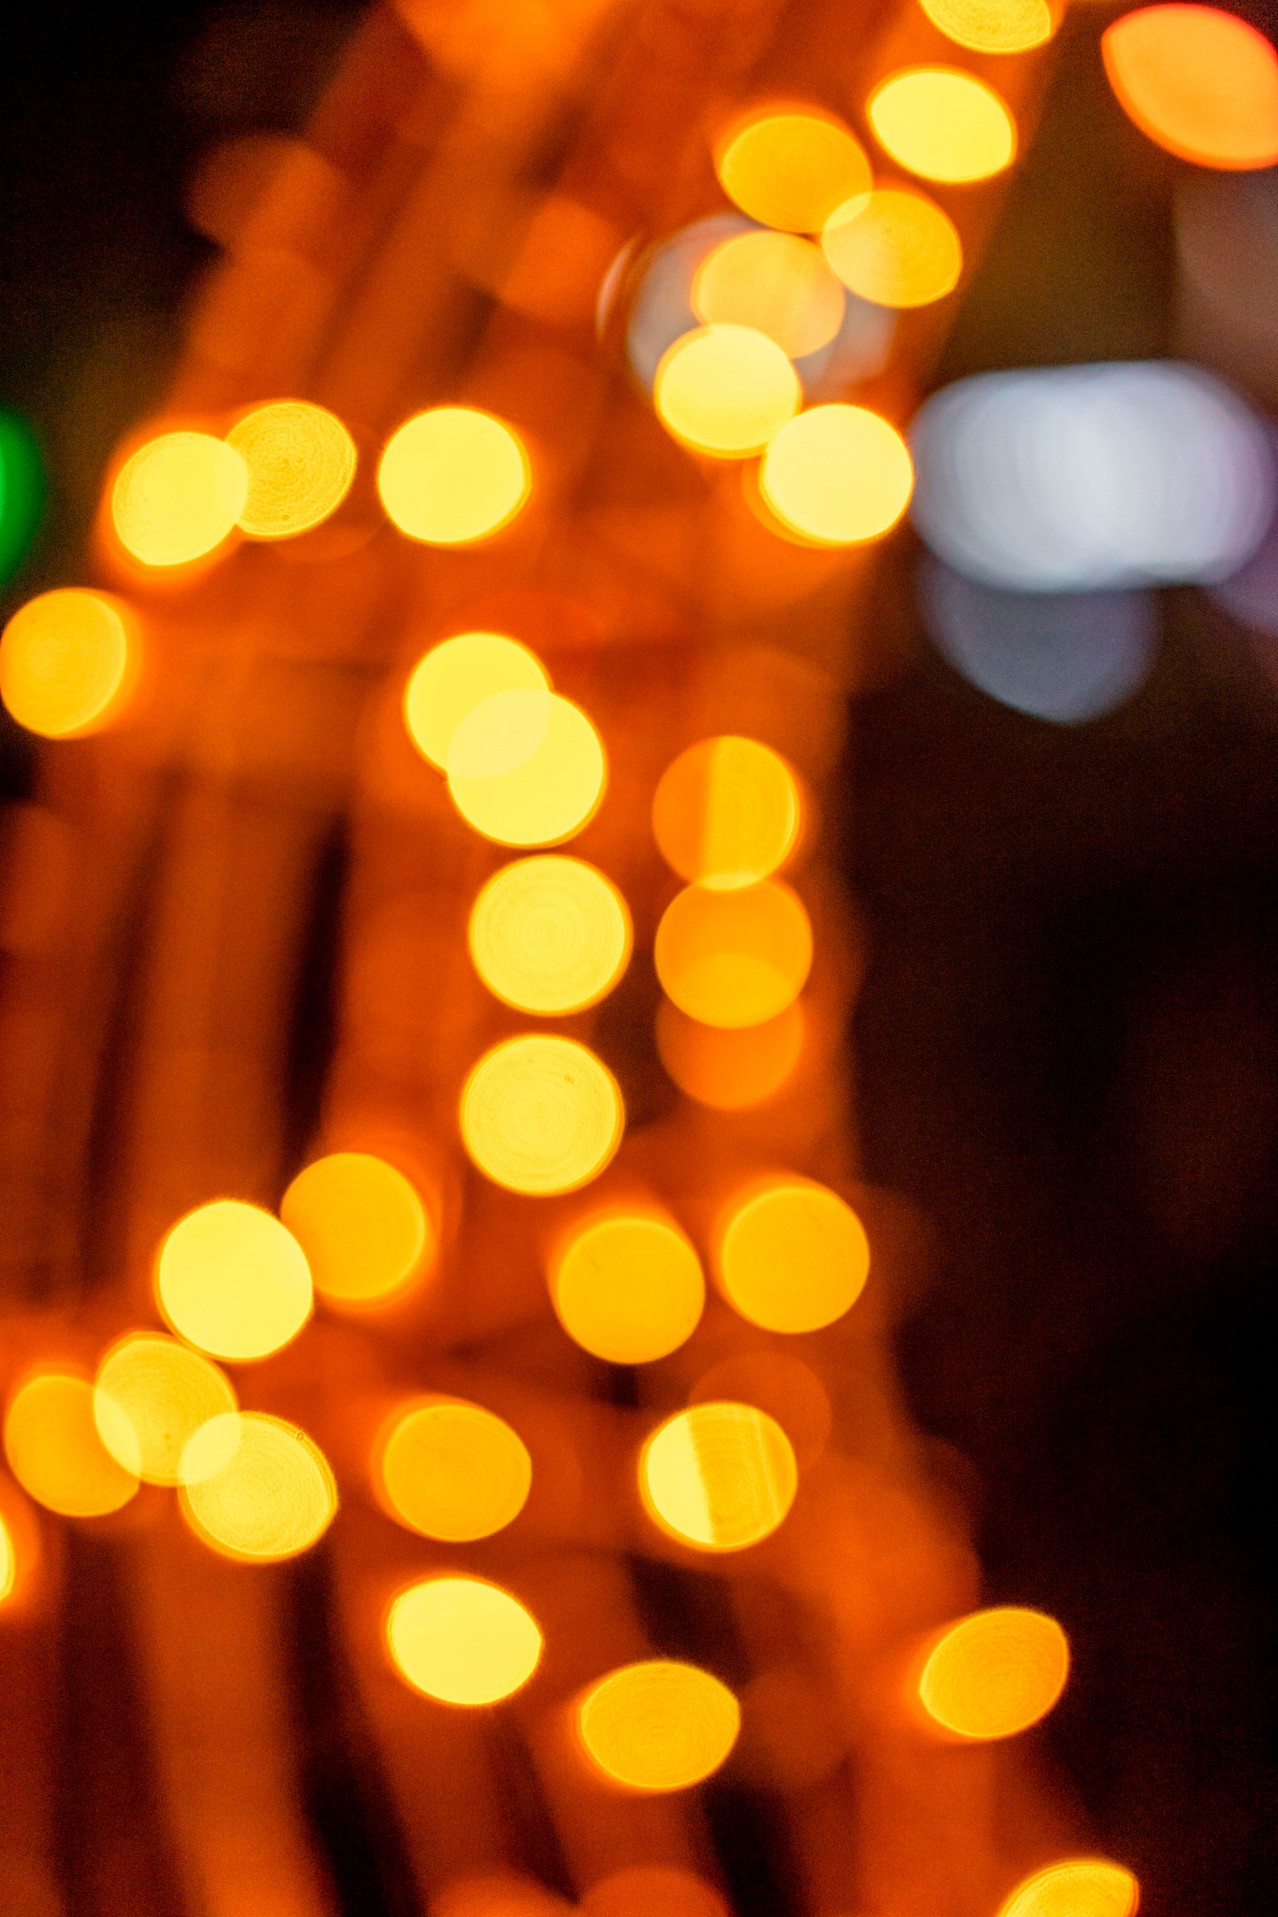 Blurred yellow Christmas lights